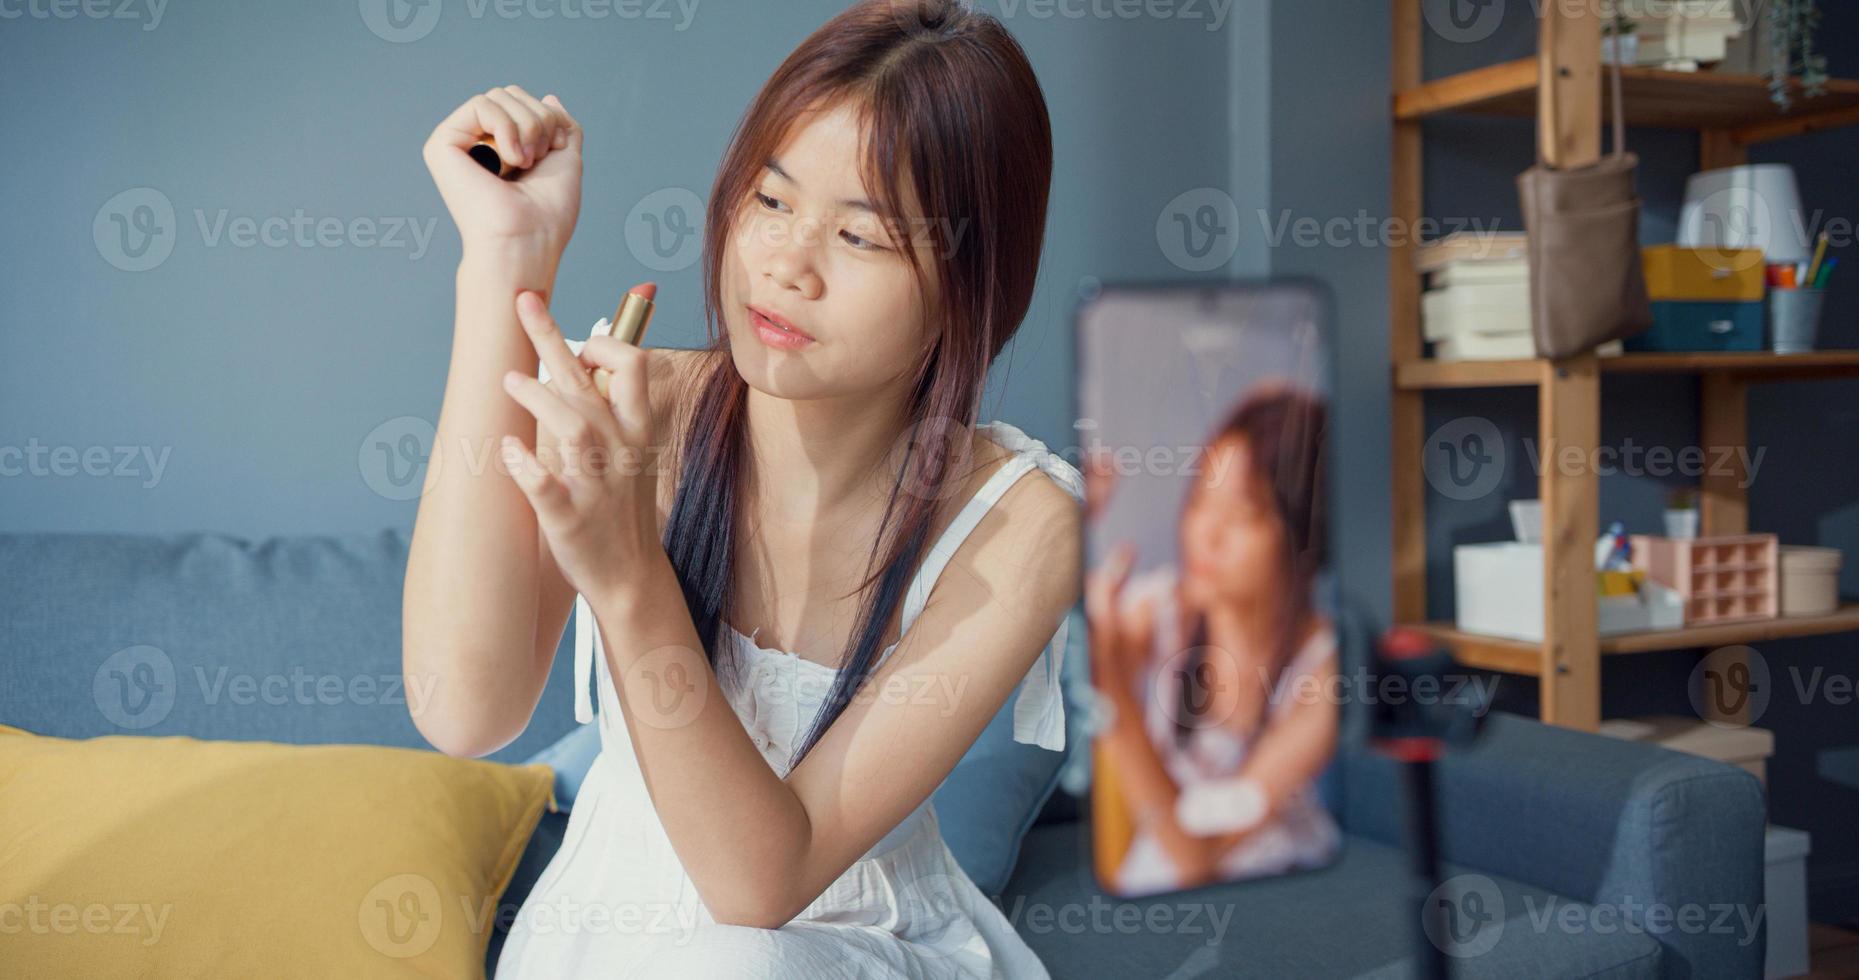 felice giovane ragazza asiatica trucco vlog anteriore della fotocamera del telefono godere di revisione rossetto parlare con seguace nel soggiorno a casa. stile di vita dell'attività di blogger, concetto di pandemia di coronavirus a distanza sociale. foto